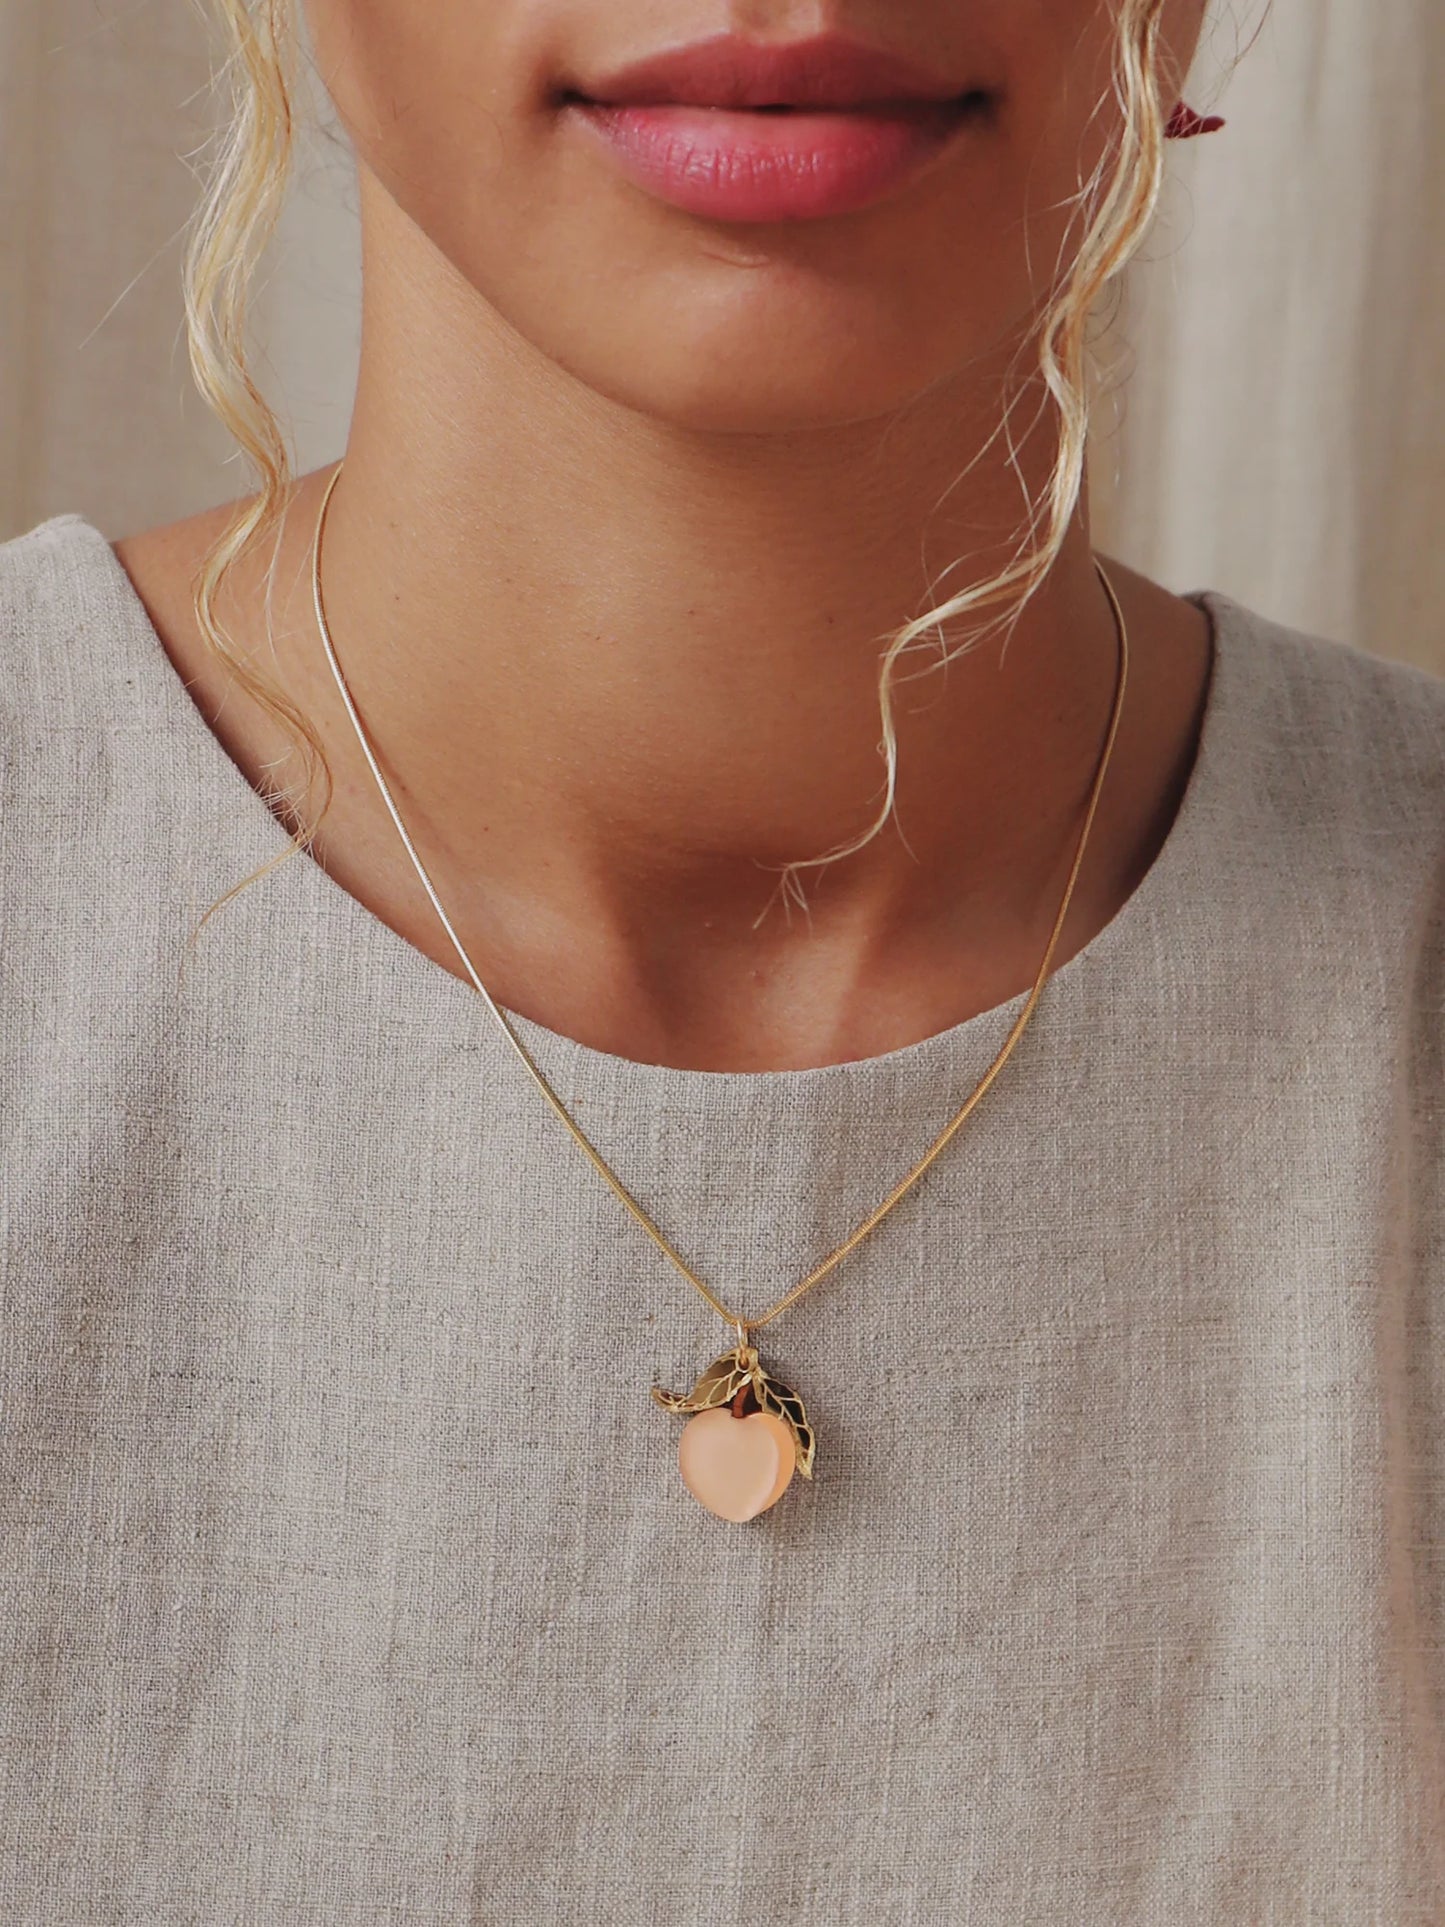 Mini Peach Necklace